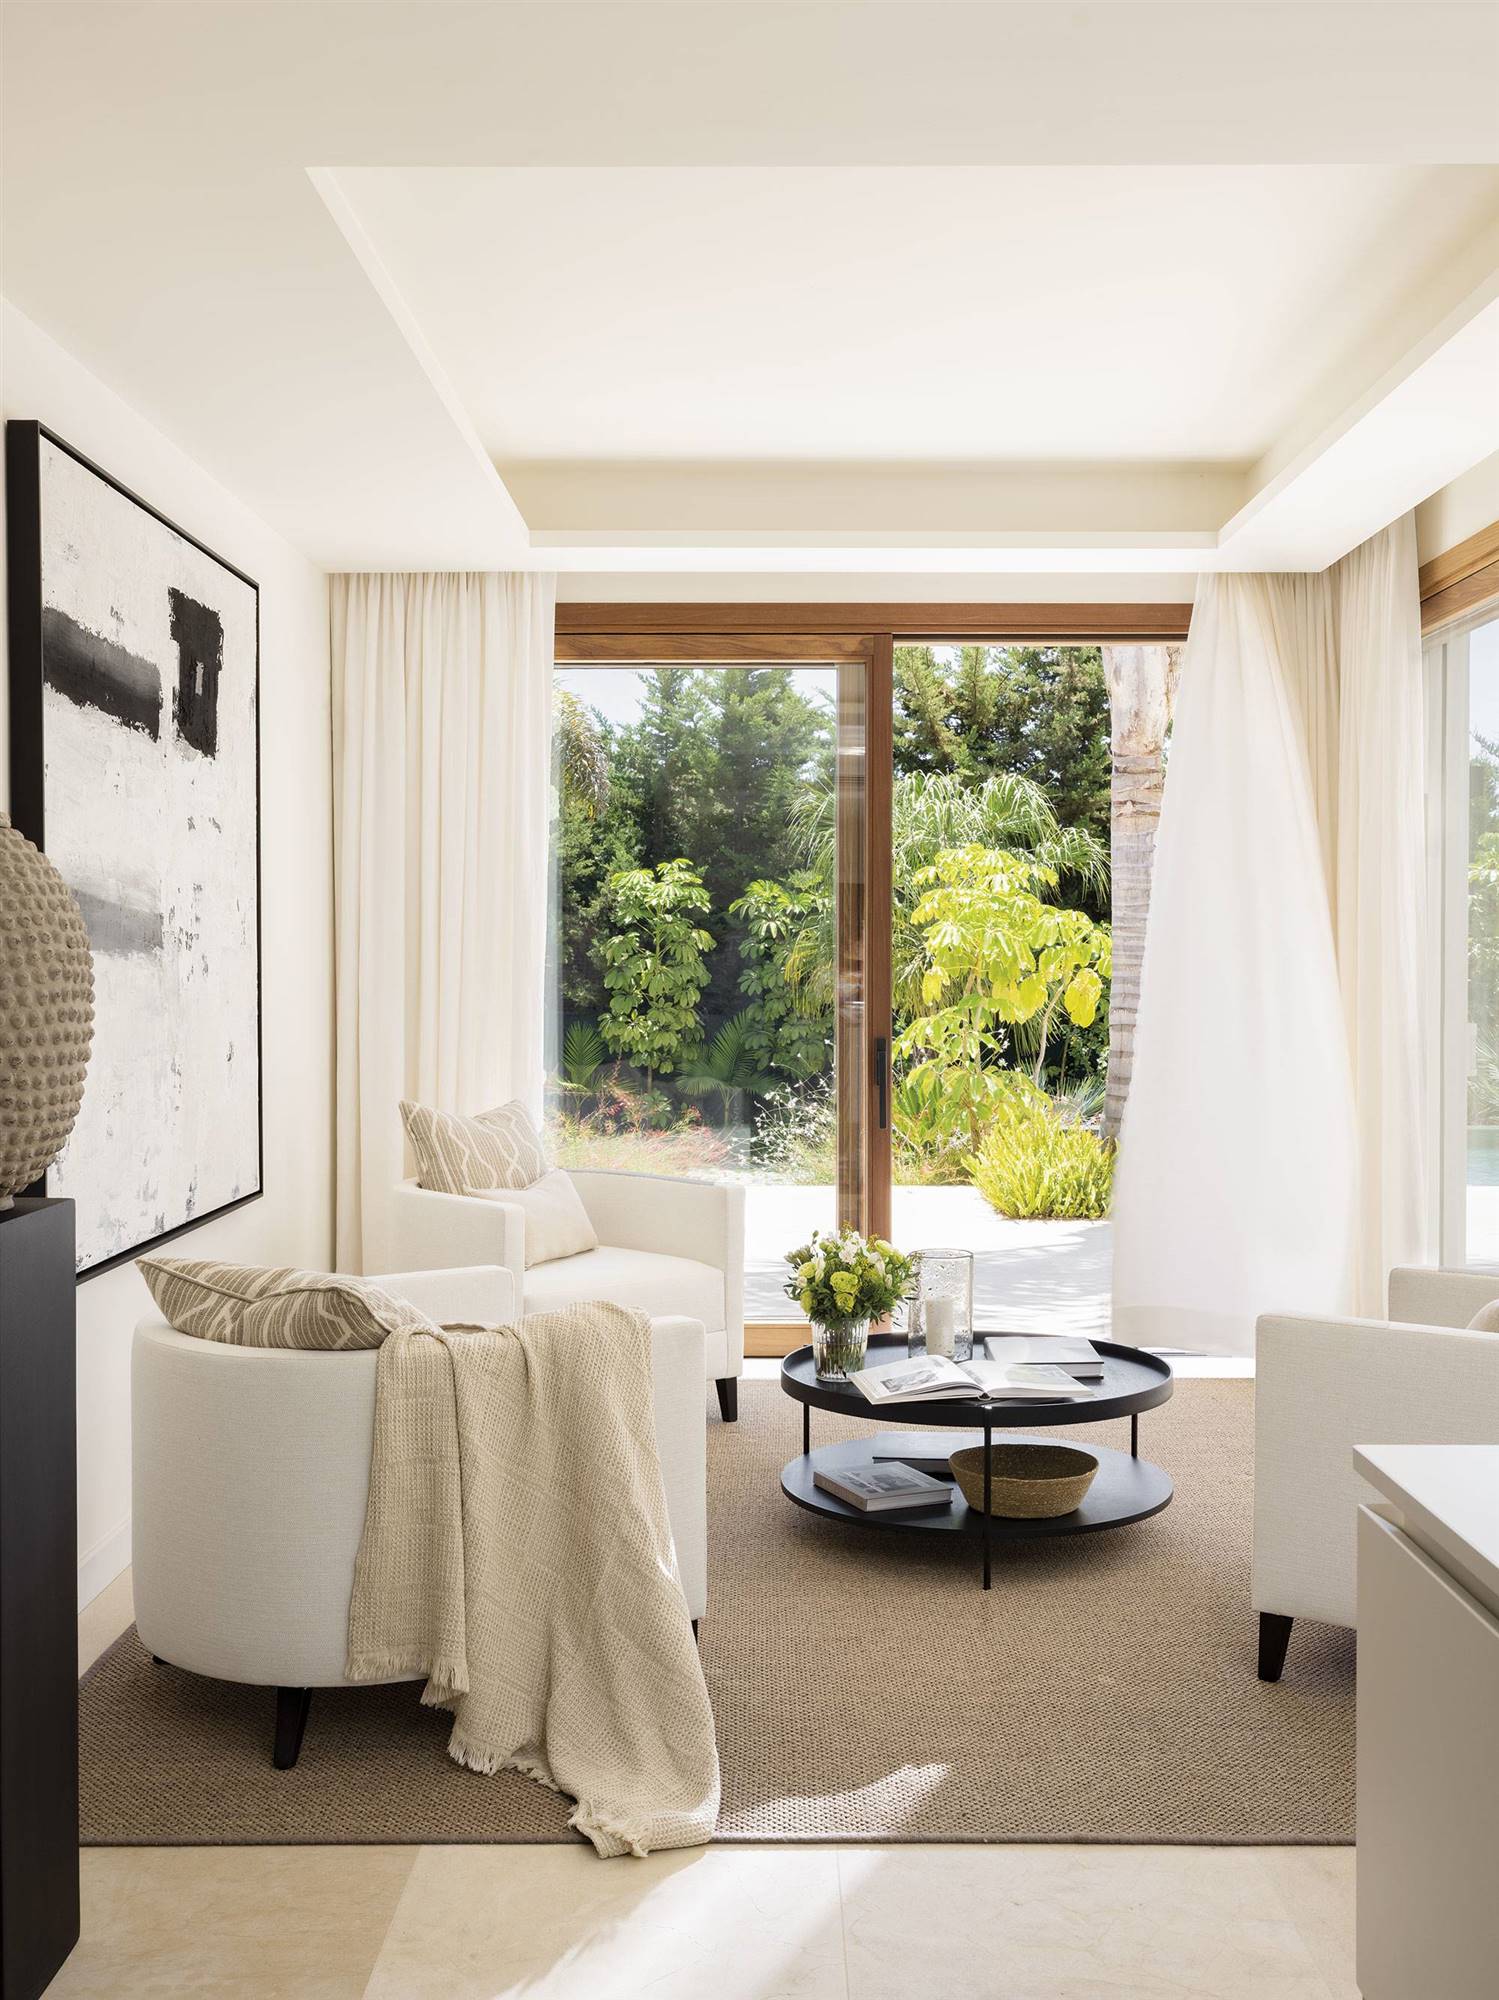 Rincón con butacas blancas, cortinas de lino ligero y alfombra.